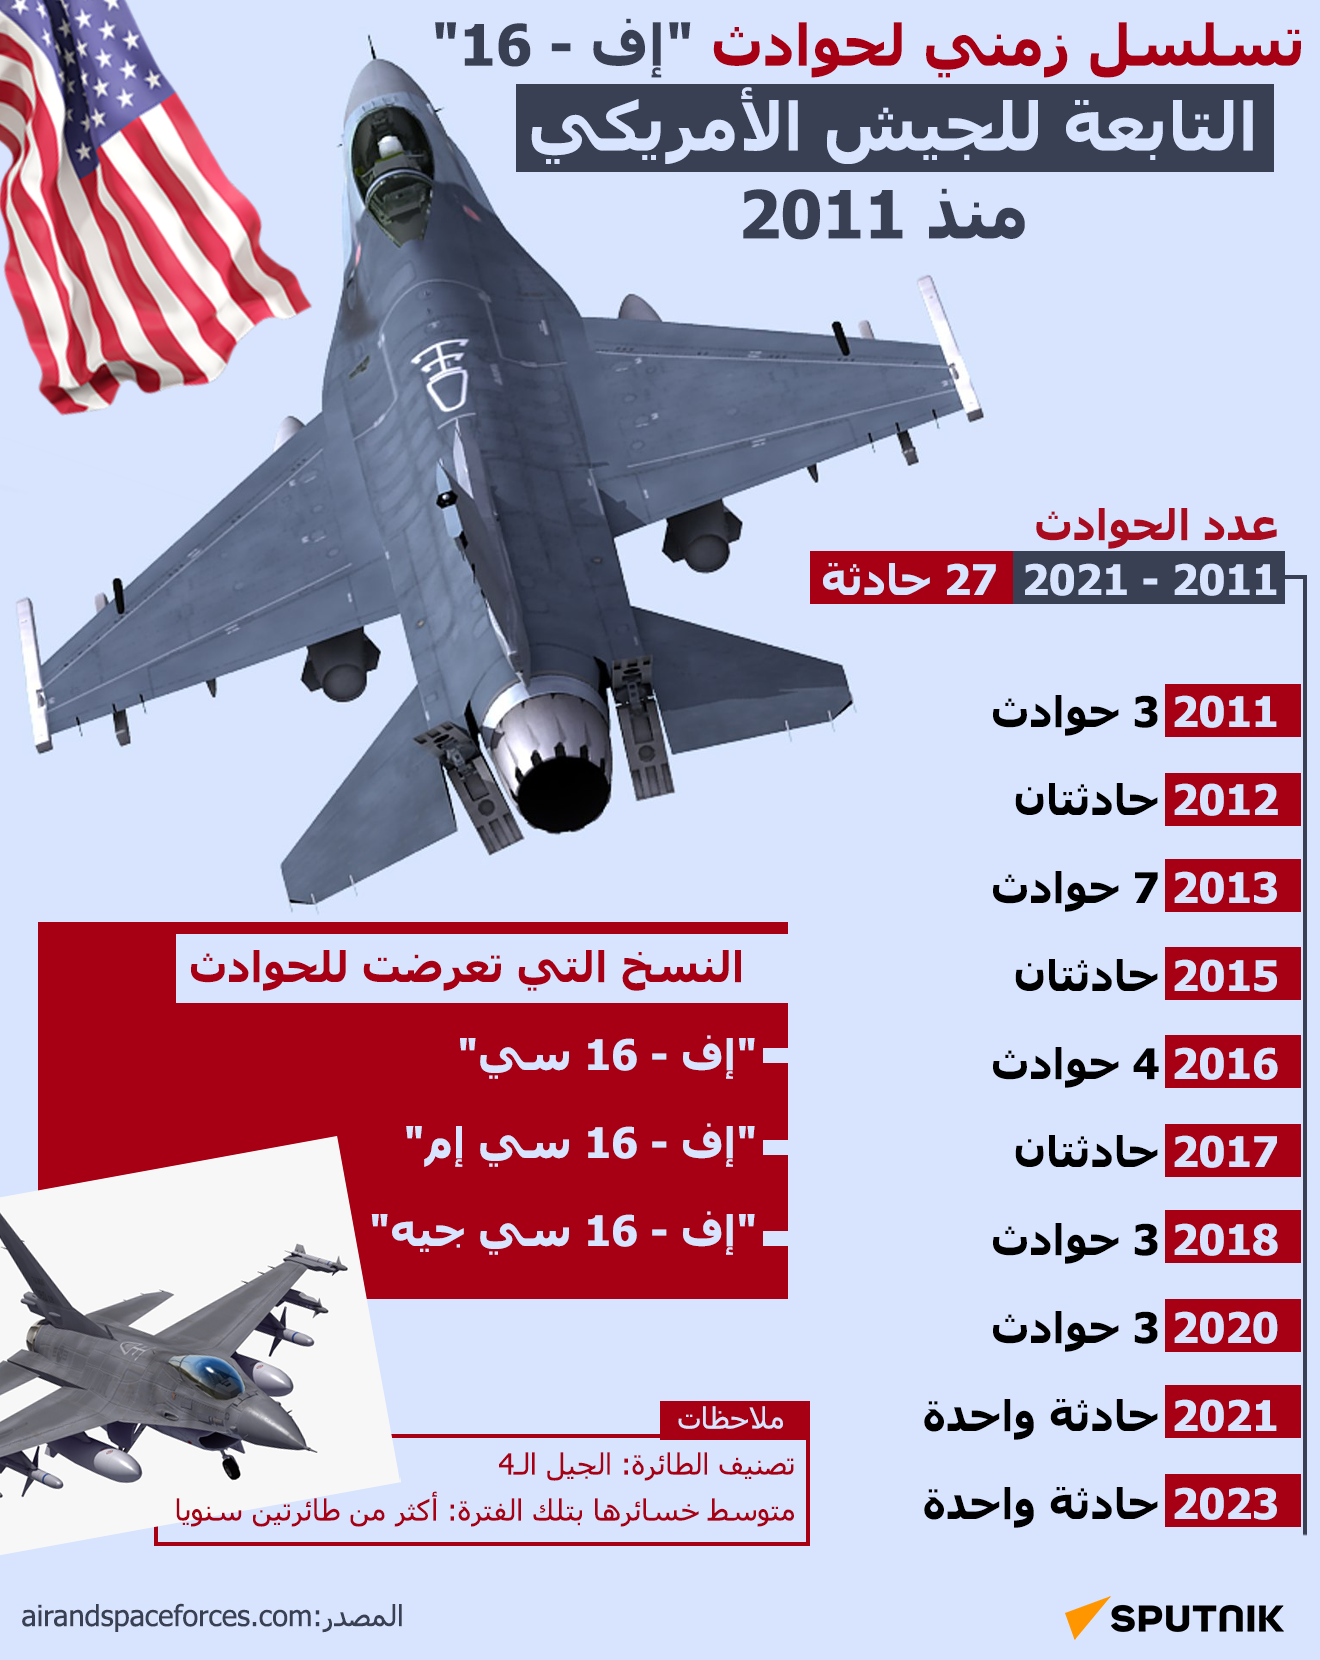 تسلسل زمني لحوادث إف - 16 التابعة للجيش الأمريكي منذ 2011 - سبوتنيك عربي